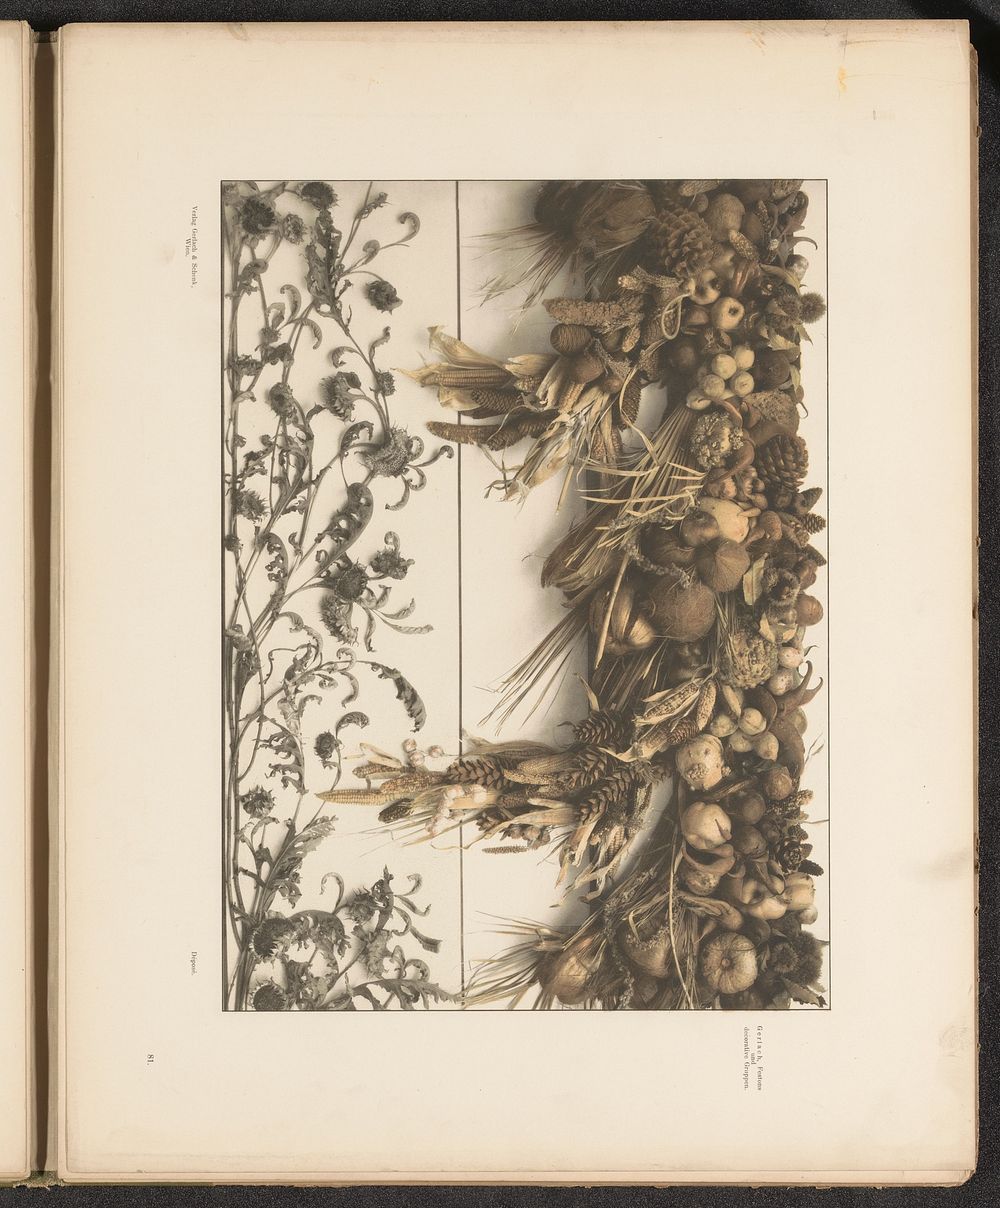 Fries van gedroogde bladeren en een festoen met meloenen, maiskolven en kokosnoten (c. 1887 - in or before 1897) by…